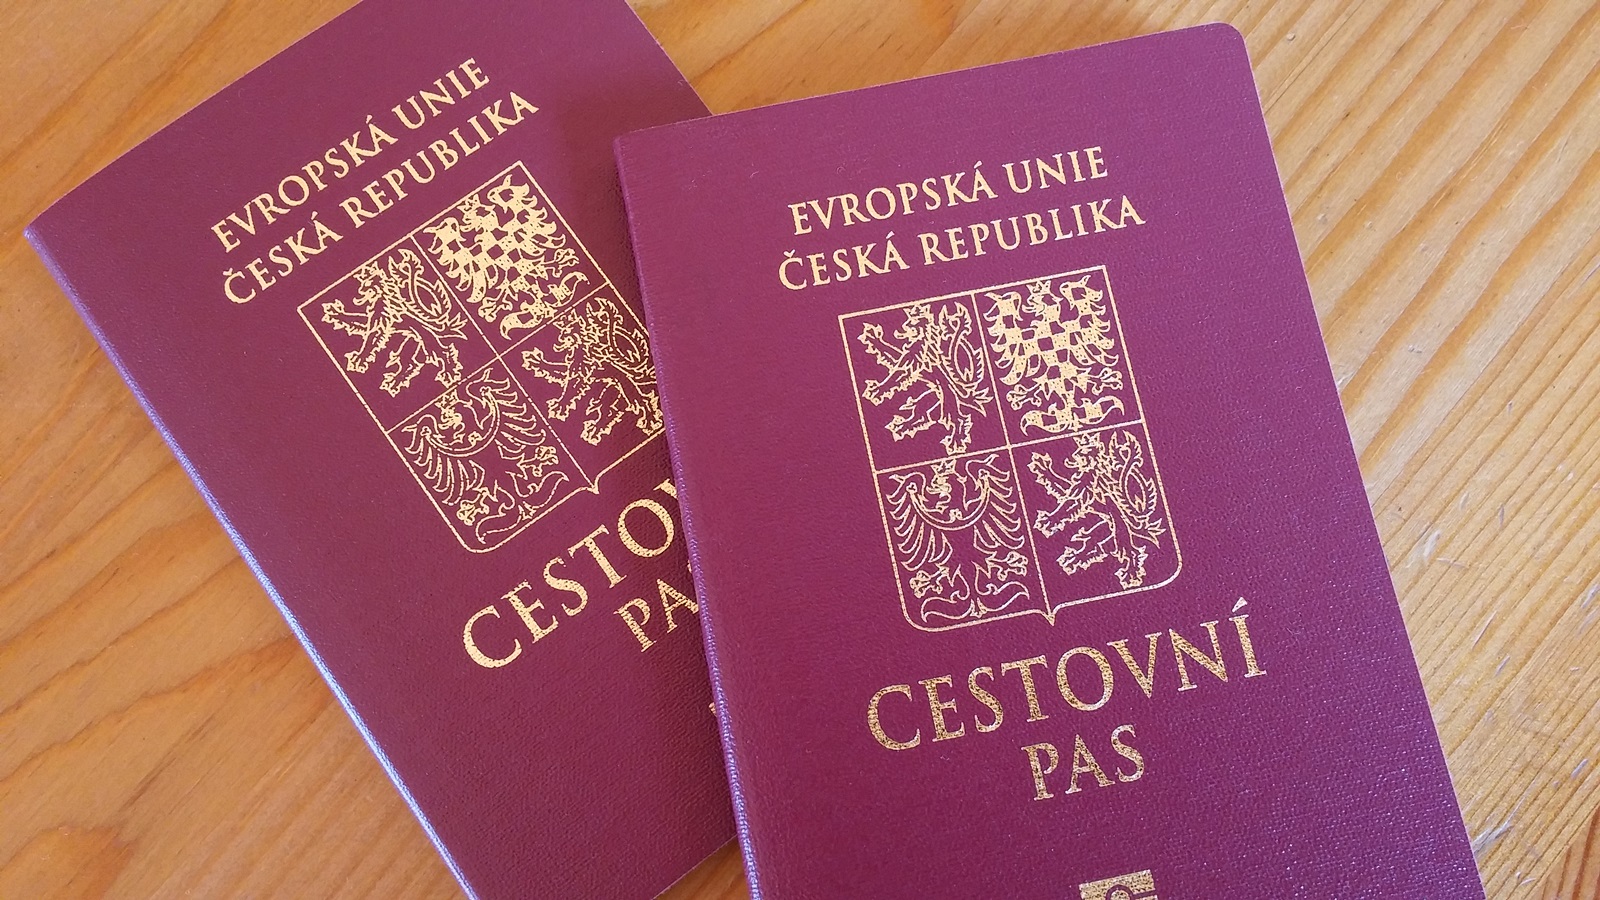 Как получить гражданство чехии - условия и требования к кандидату.